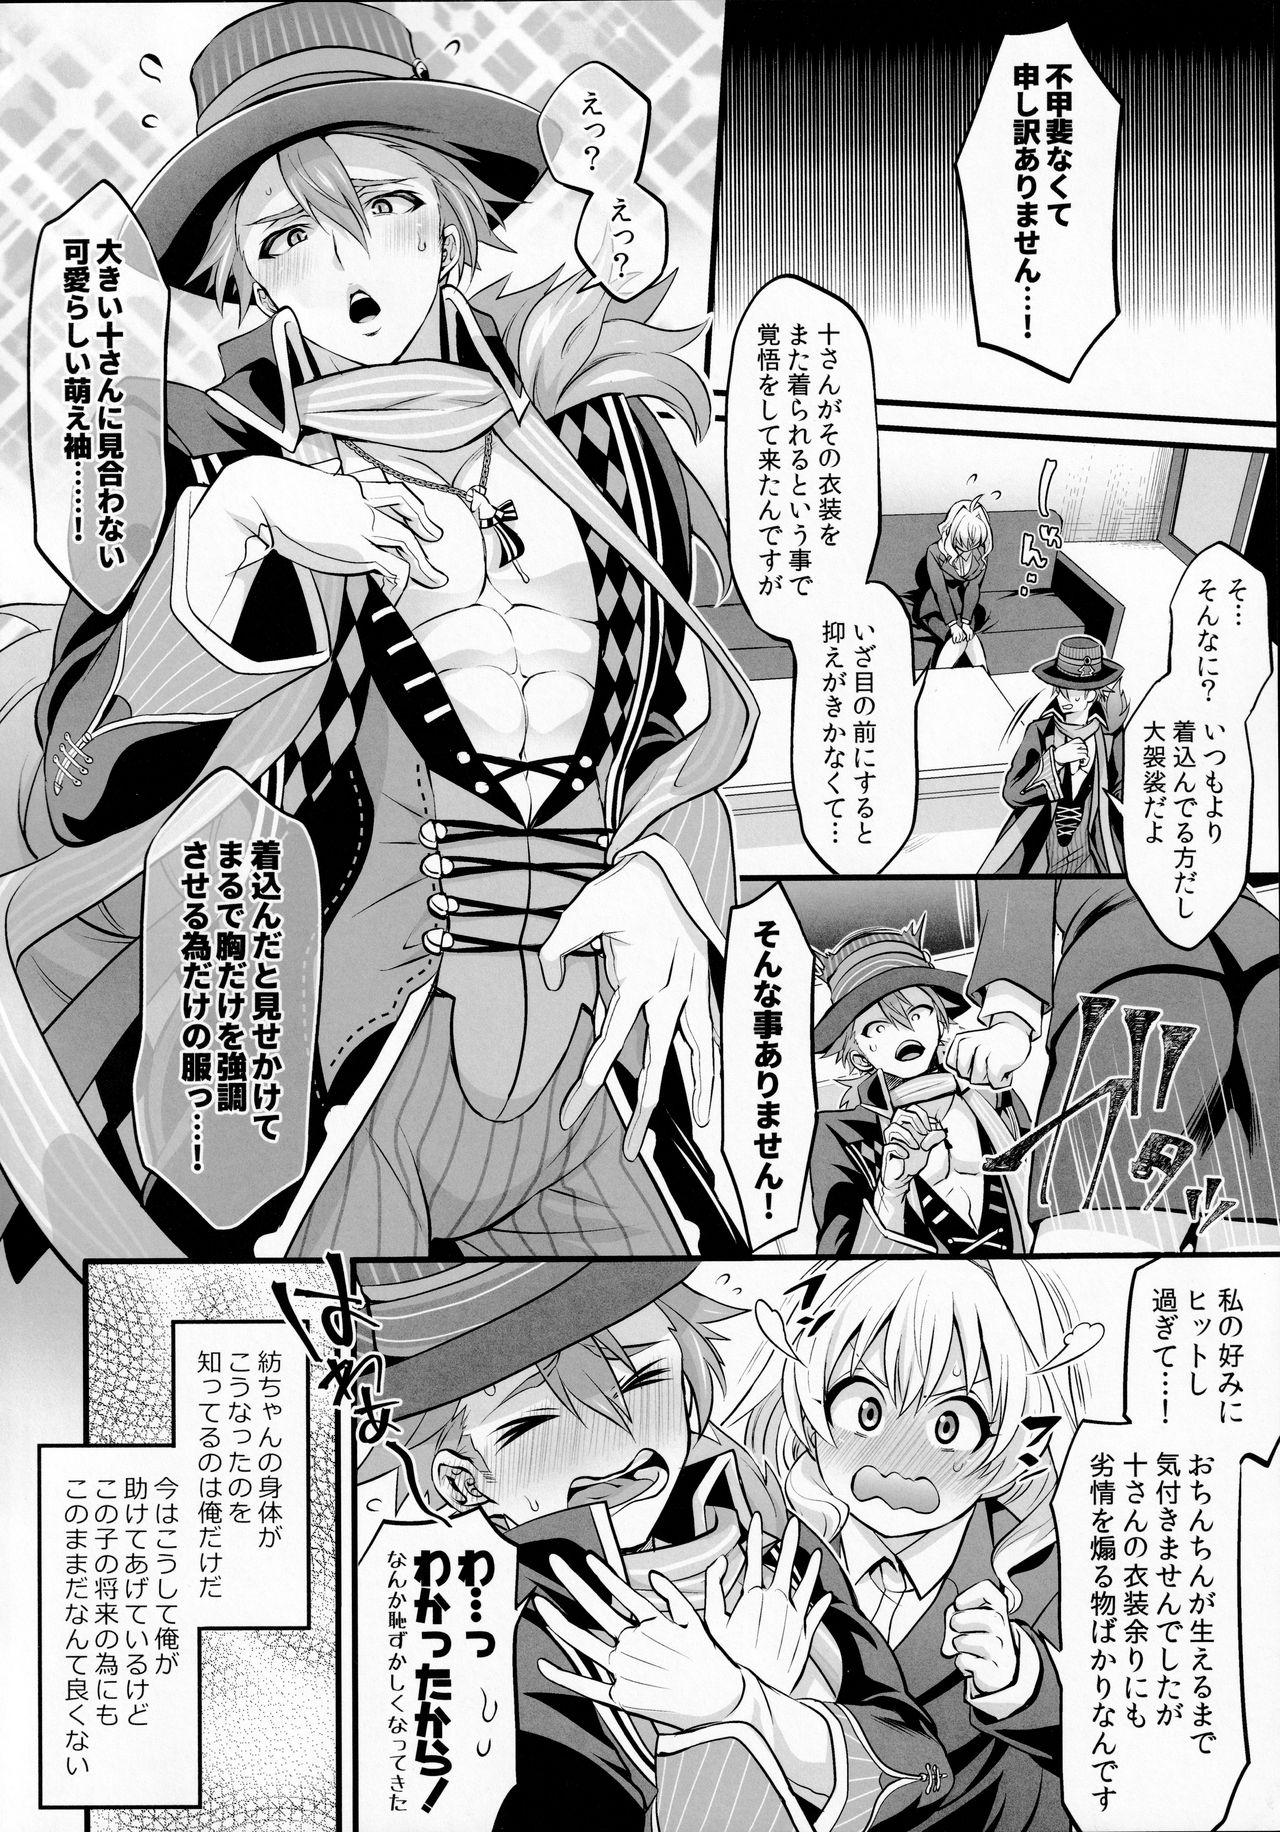 Atm Watashi no Ochinchin ga Amaeta Gatterun desu! - Idolish7 Gritona - Page 4